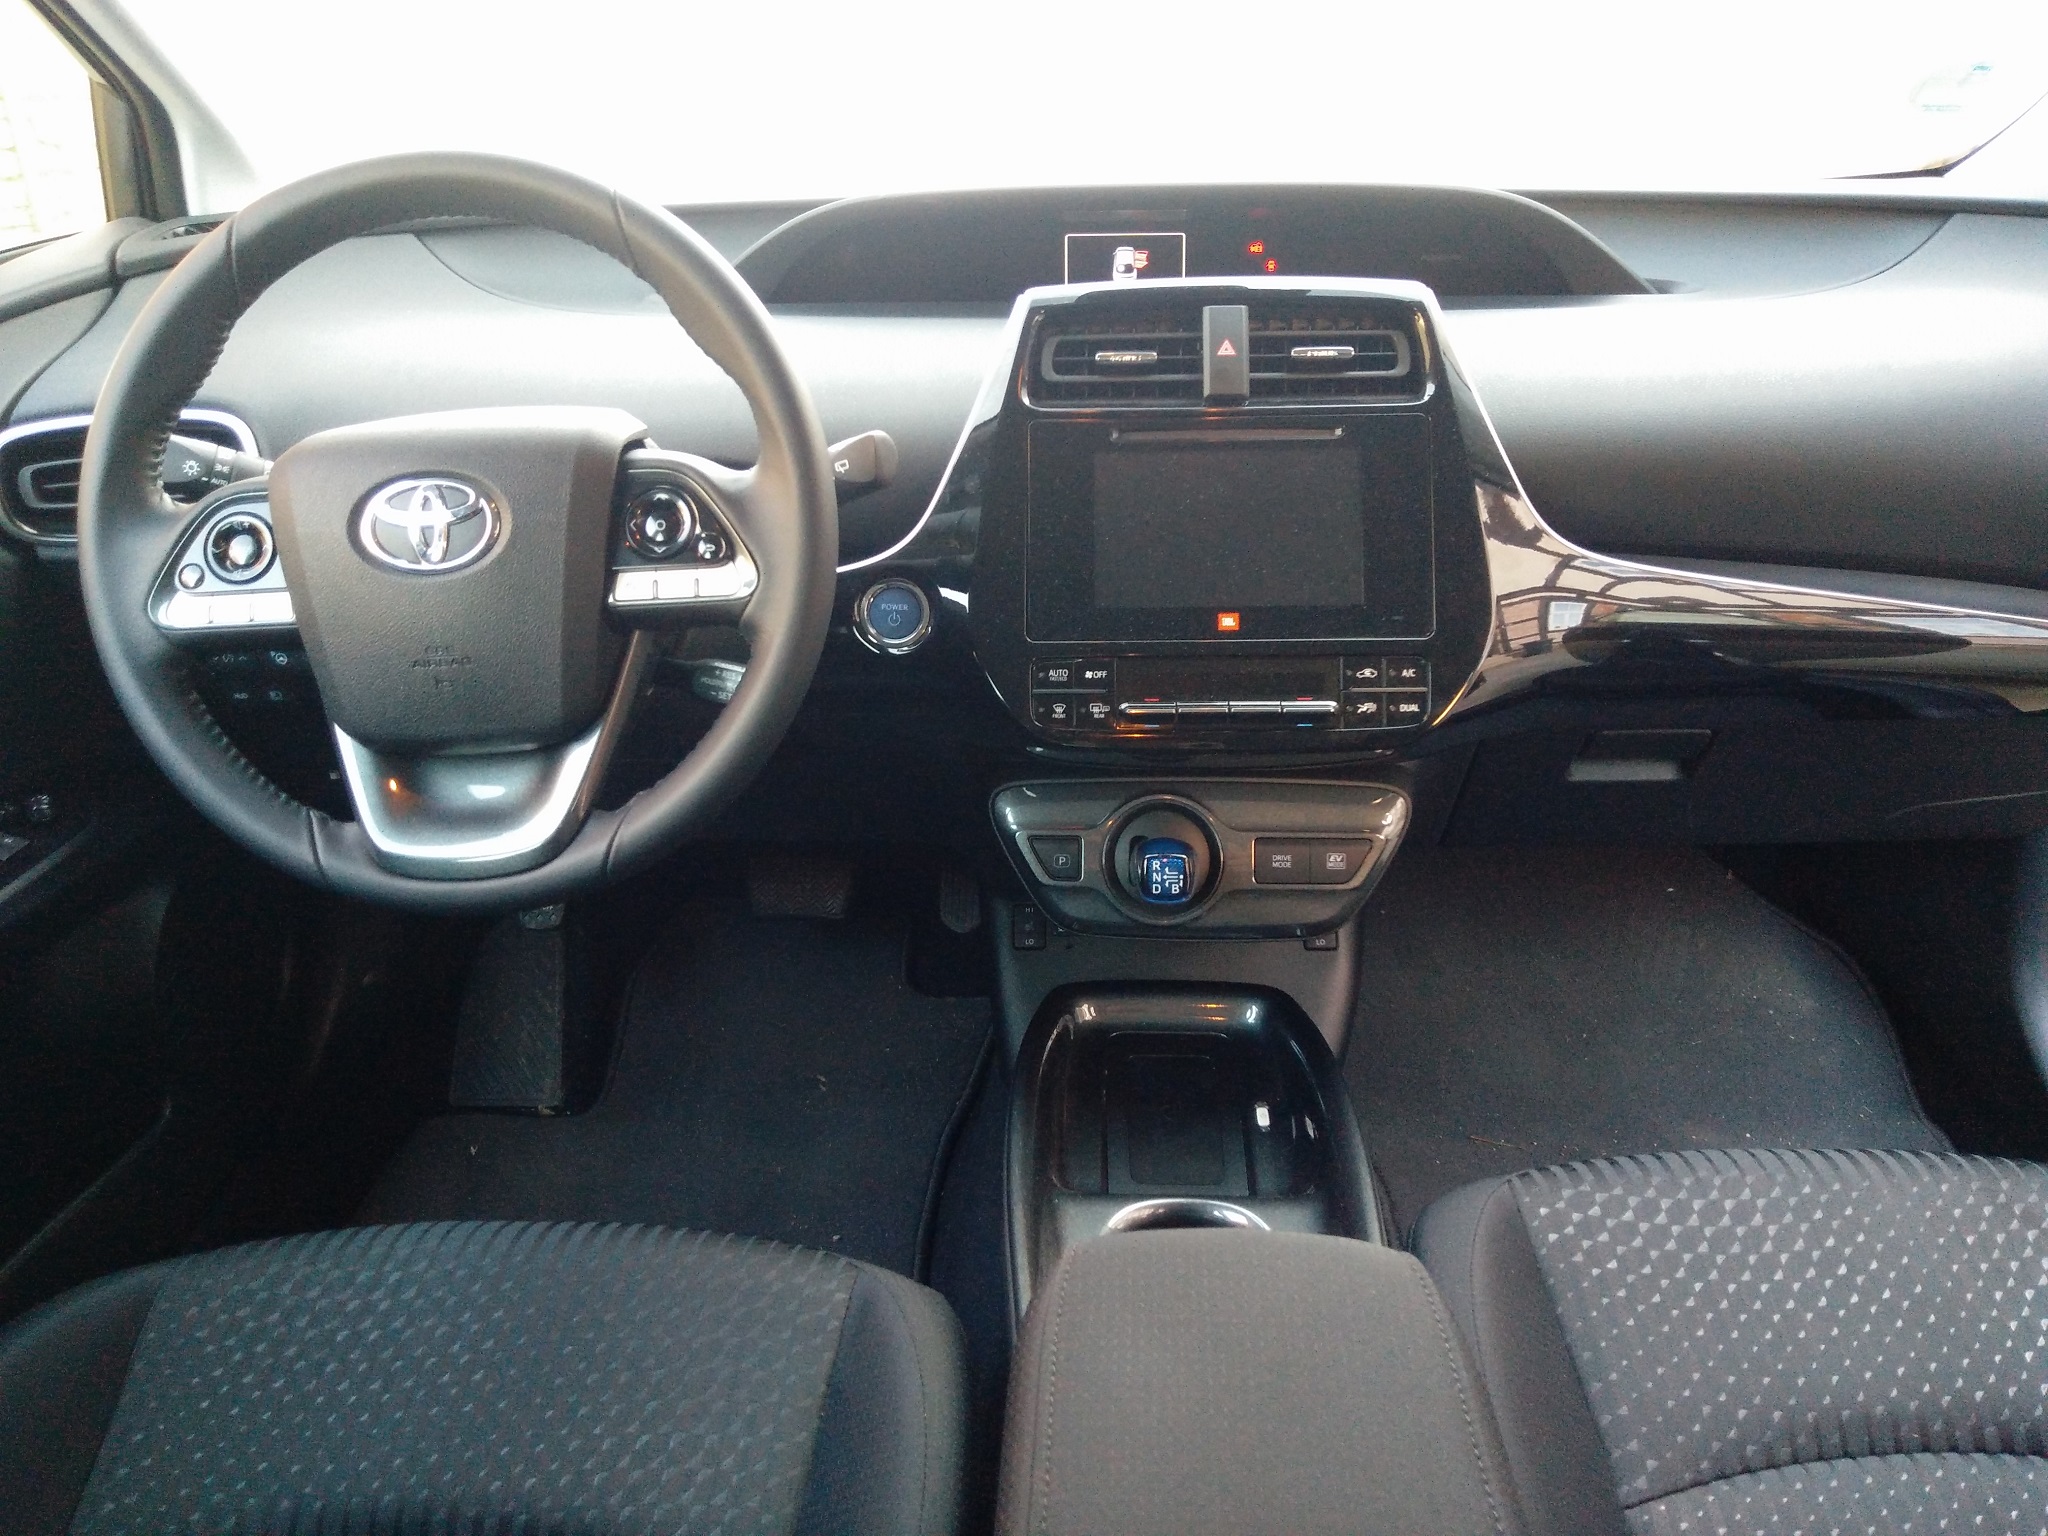 Head-up Display nachrüsten / Erfahrungen - Seite 4 - Toyota Auris und  Corolla Forum